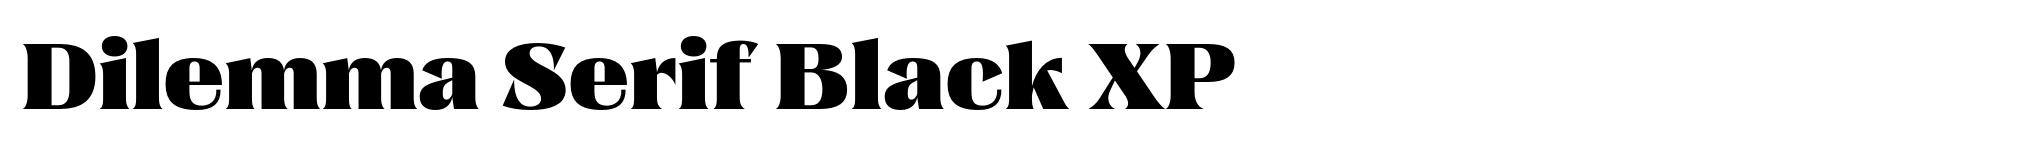 Dilemma Serif Black XP image